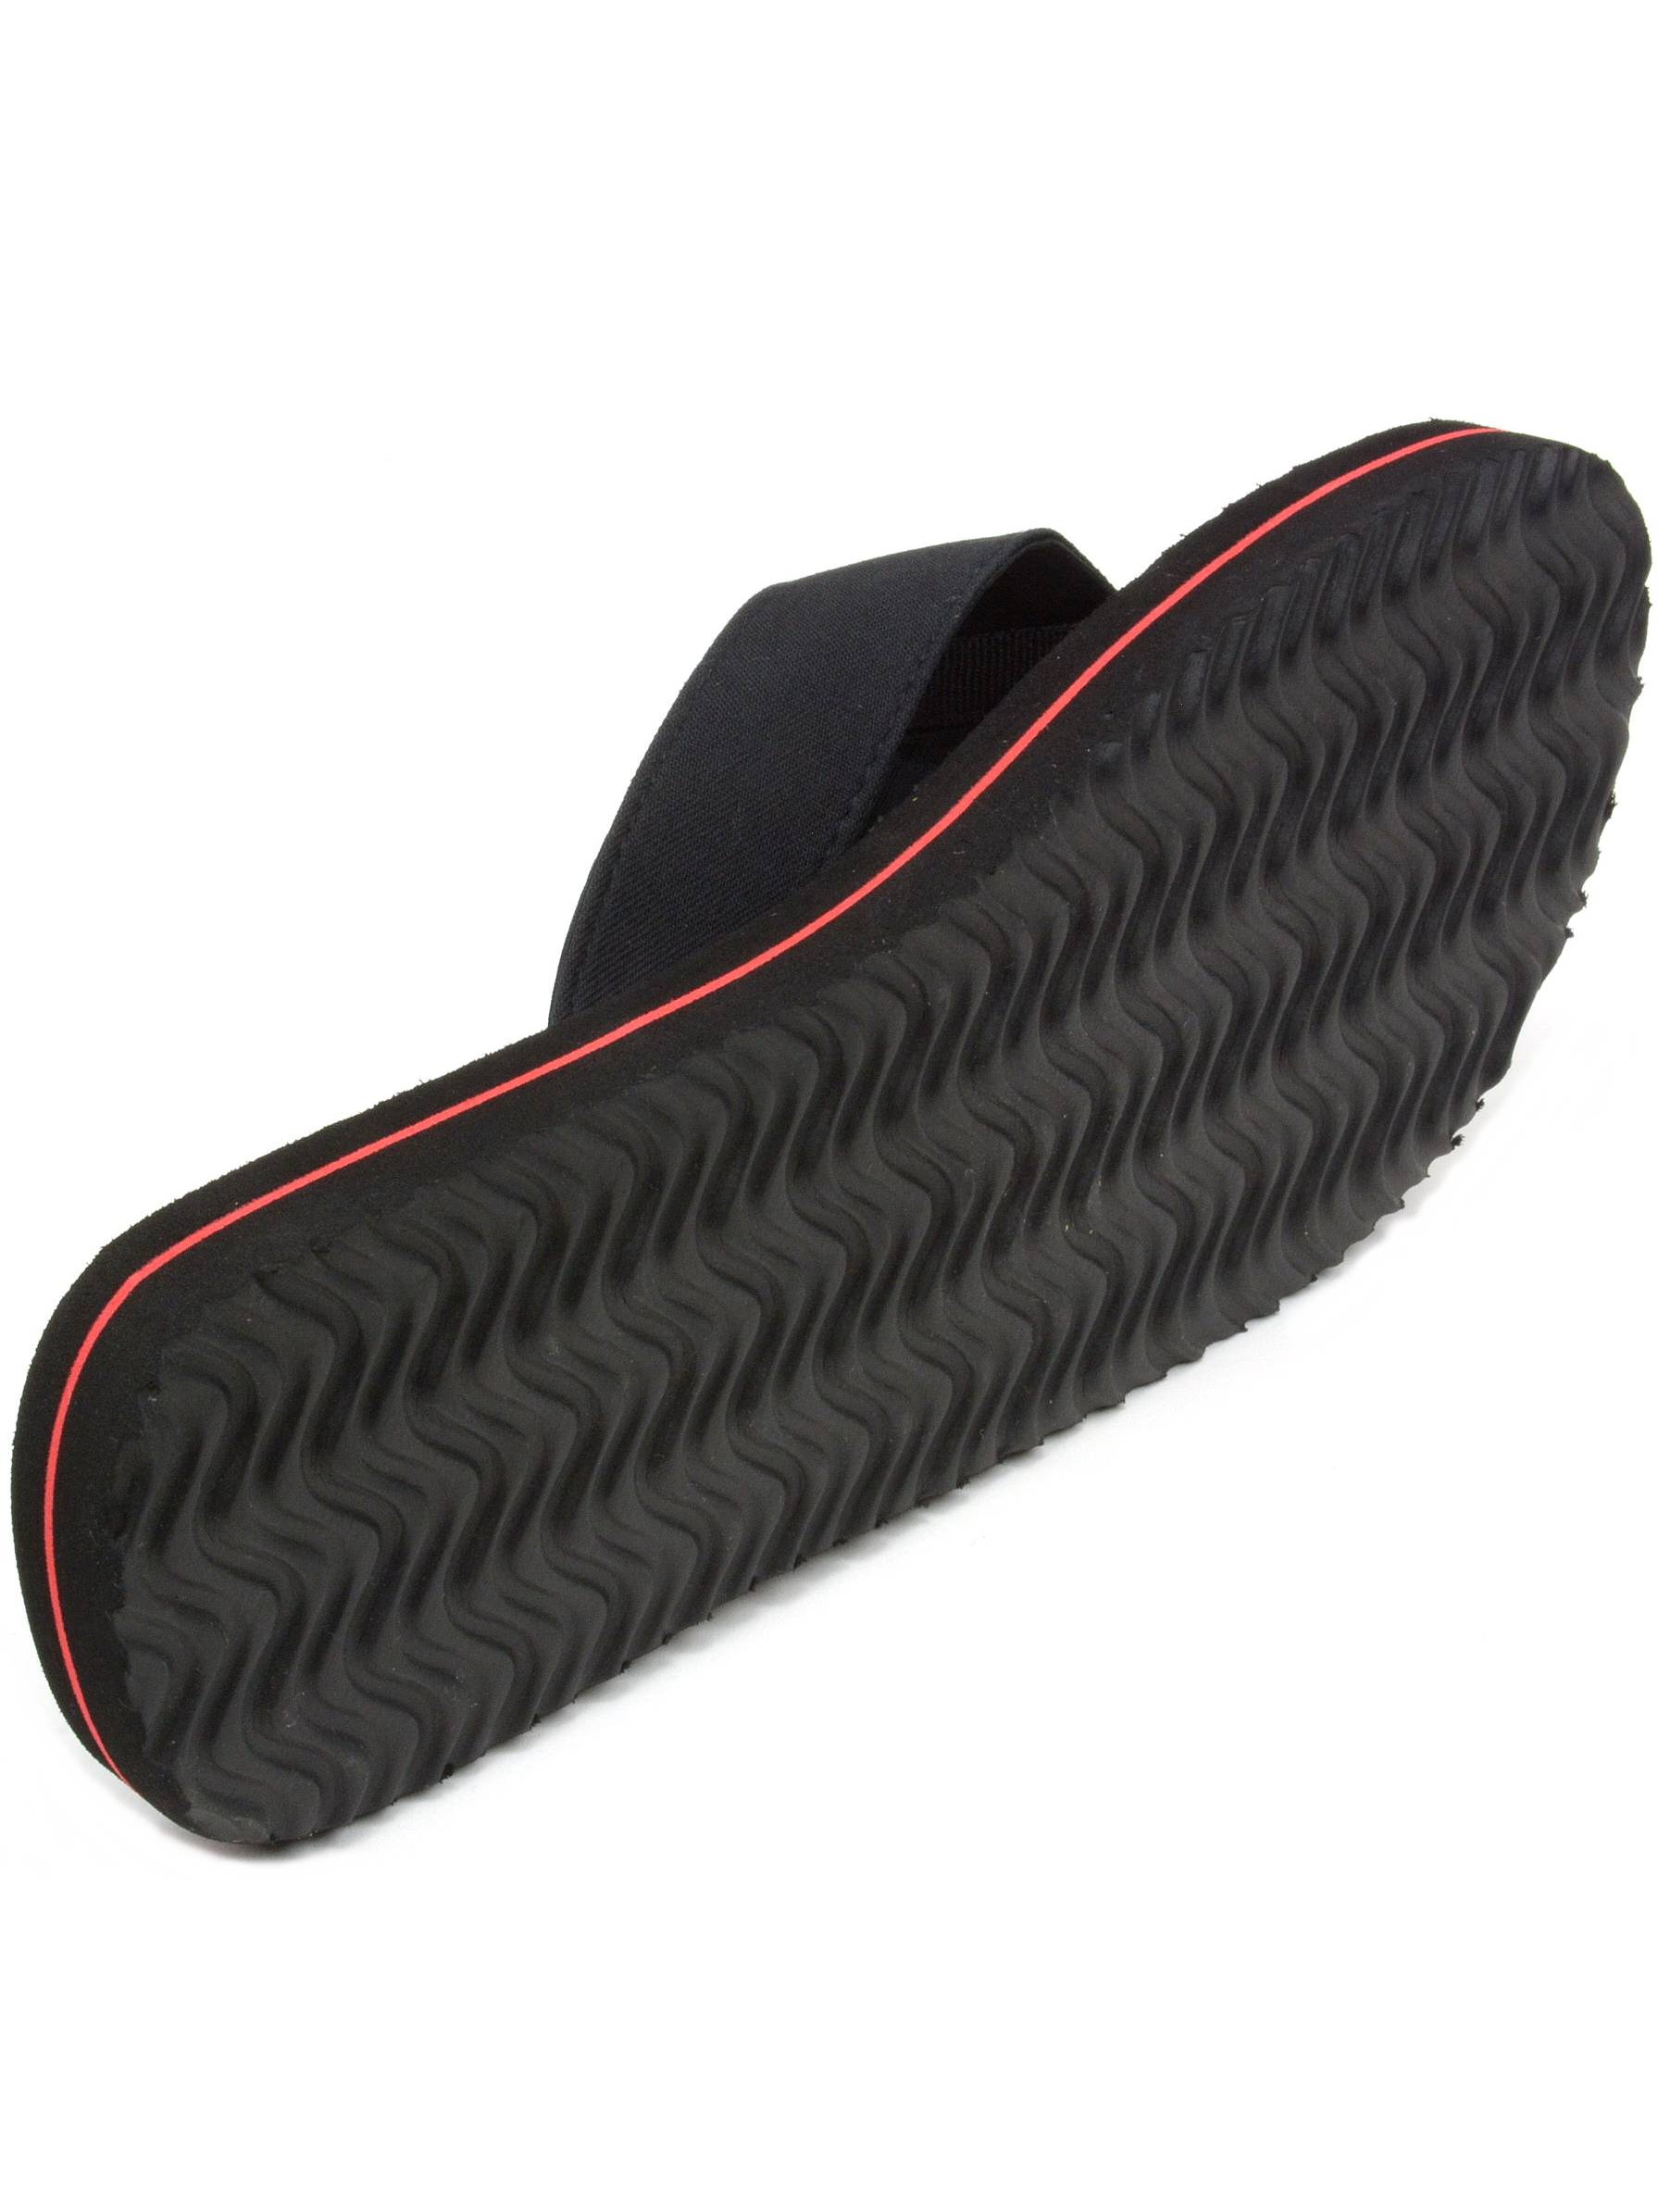 alpine swiss men's flip flops beach sandals lightweight eva sole comfort thongs - image 4 of 6